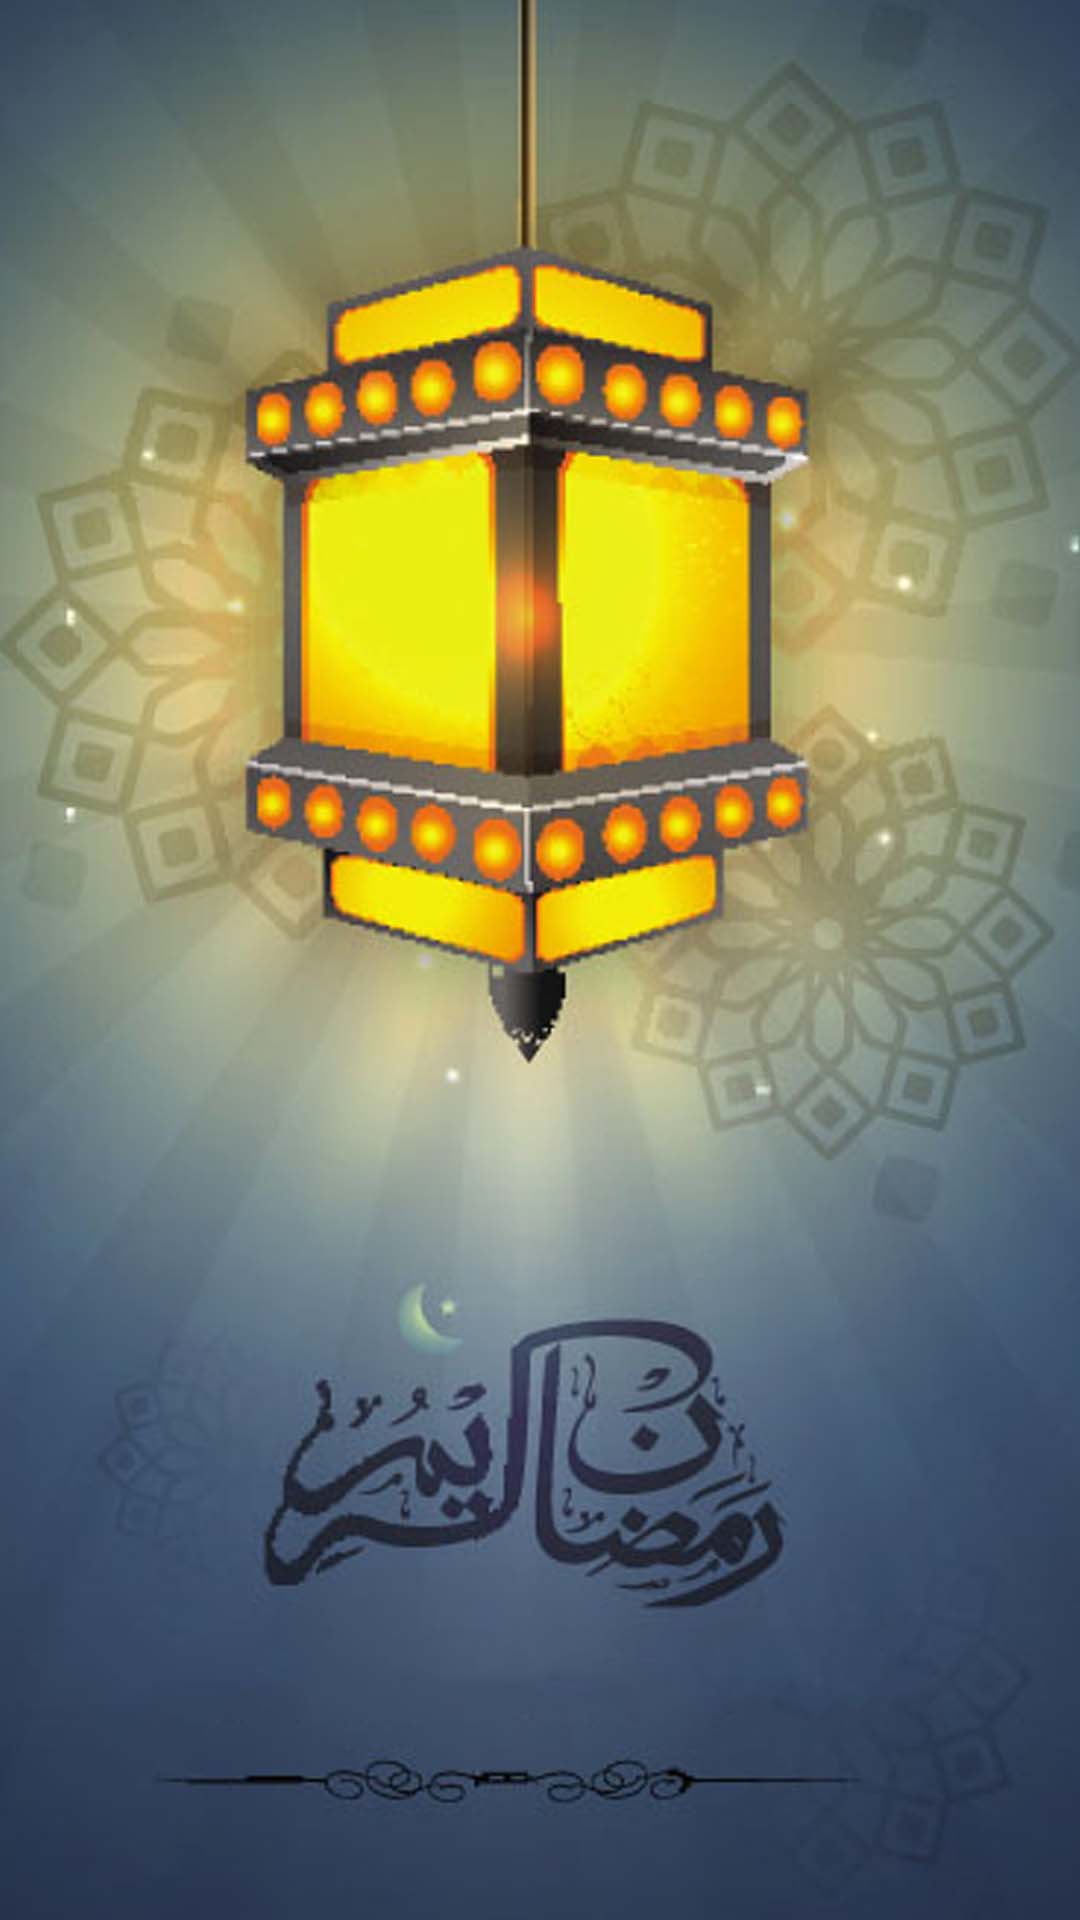 اجمل خلفيات الموبايل بمناسبه شهر رمضان 2020 S-HD-8